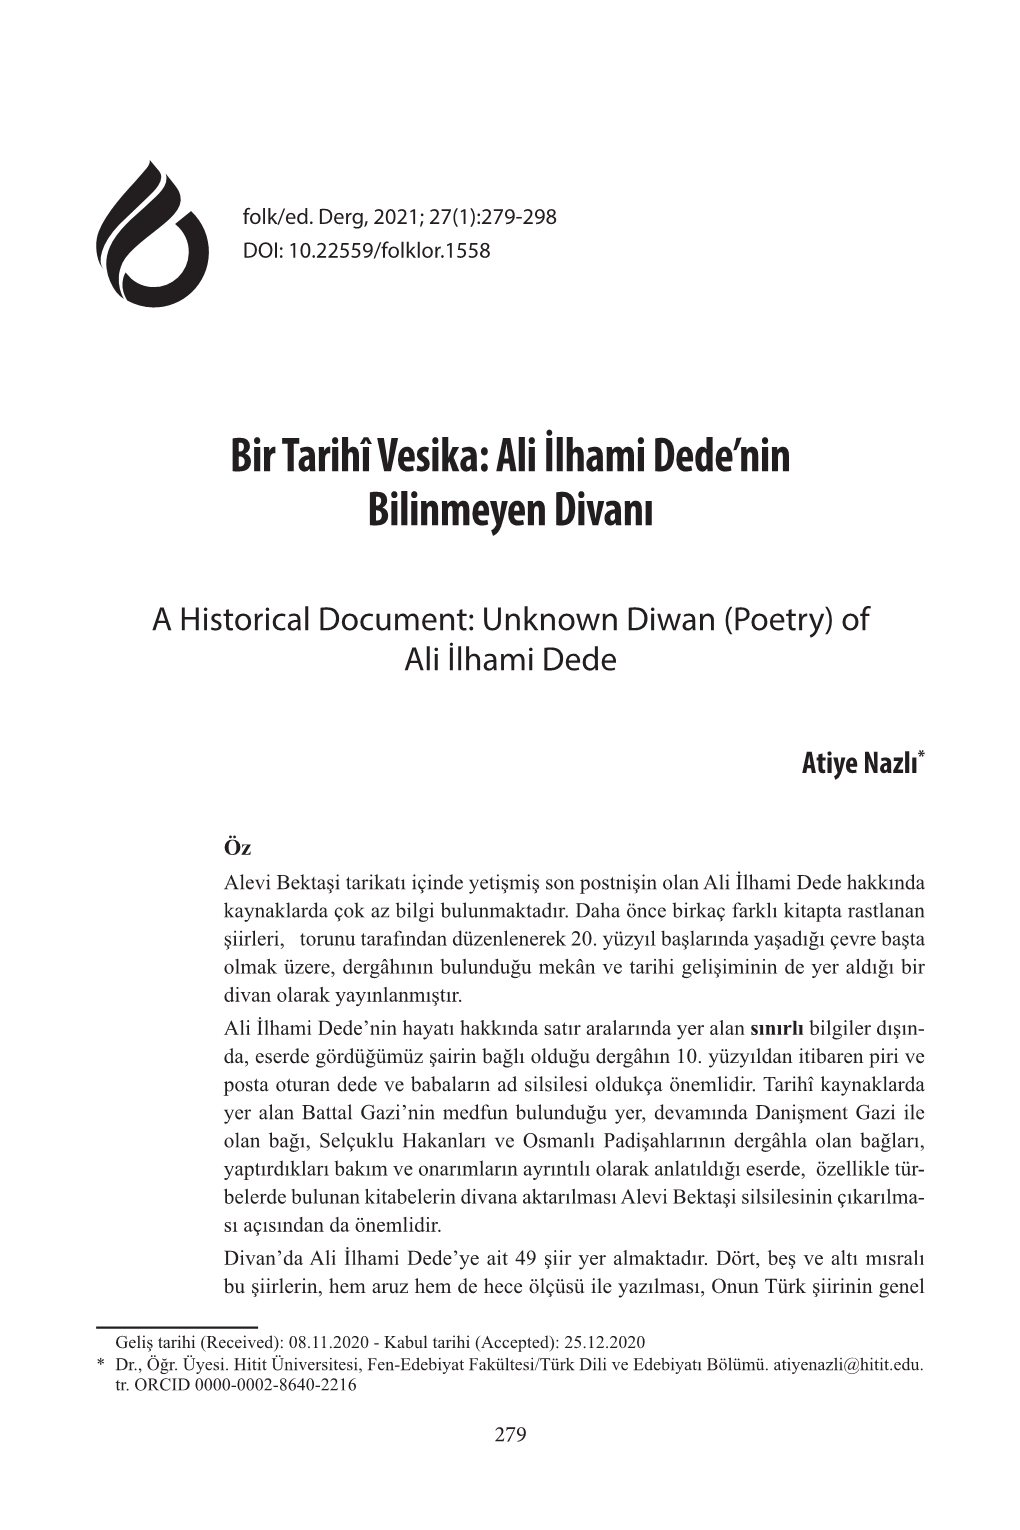 Bir Tarihî Vesika: Ali İlhami Dede'nin Bilinmeyen Divanı